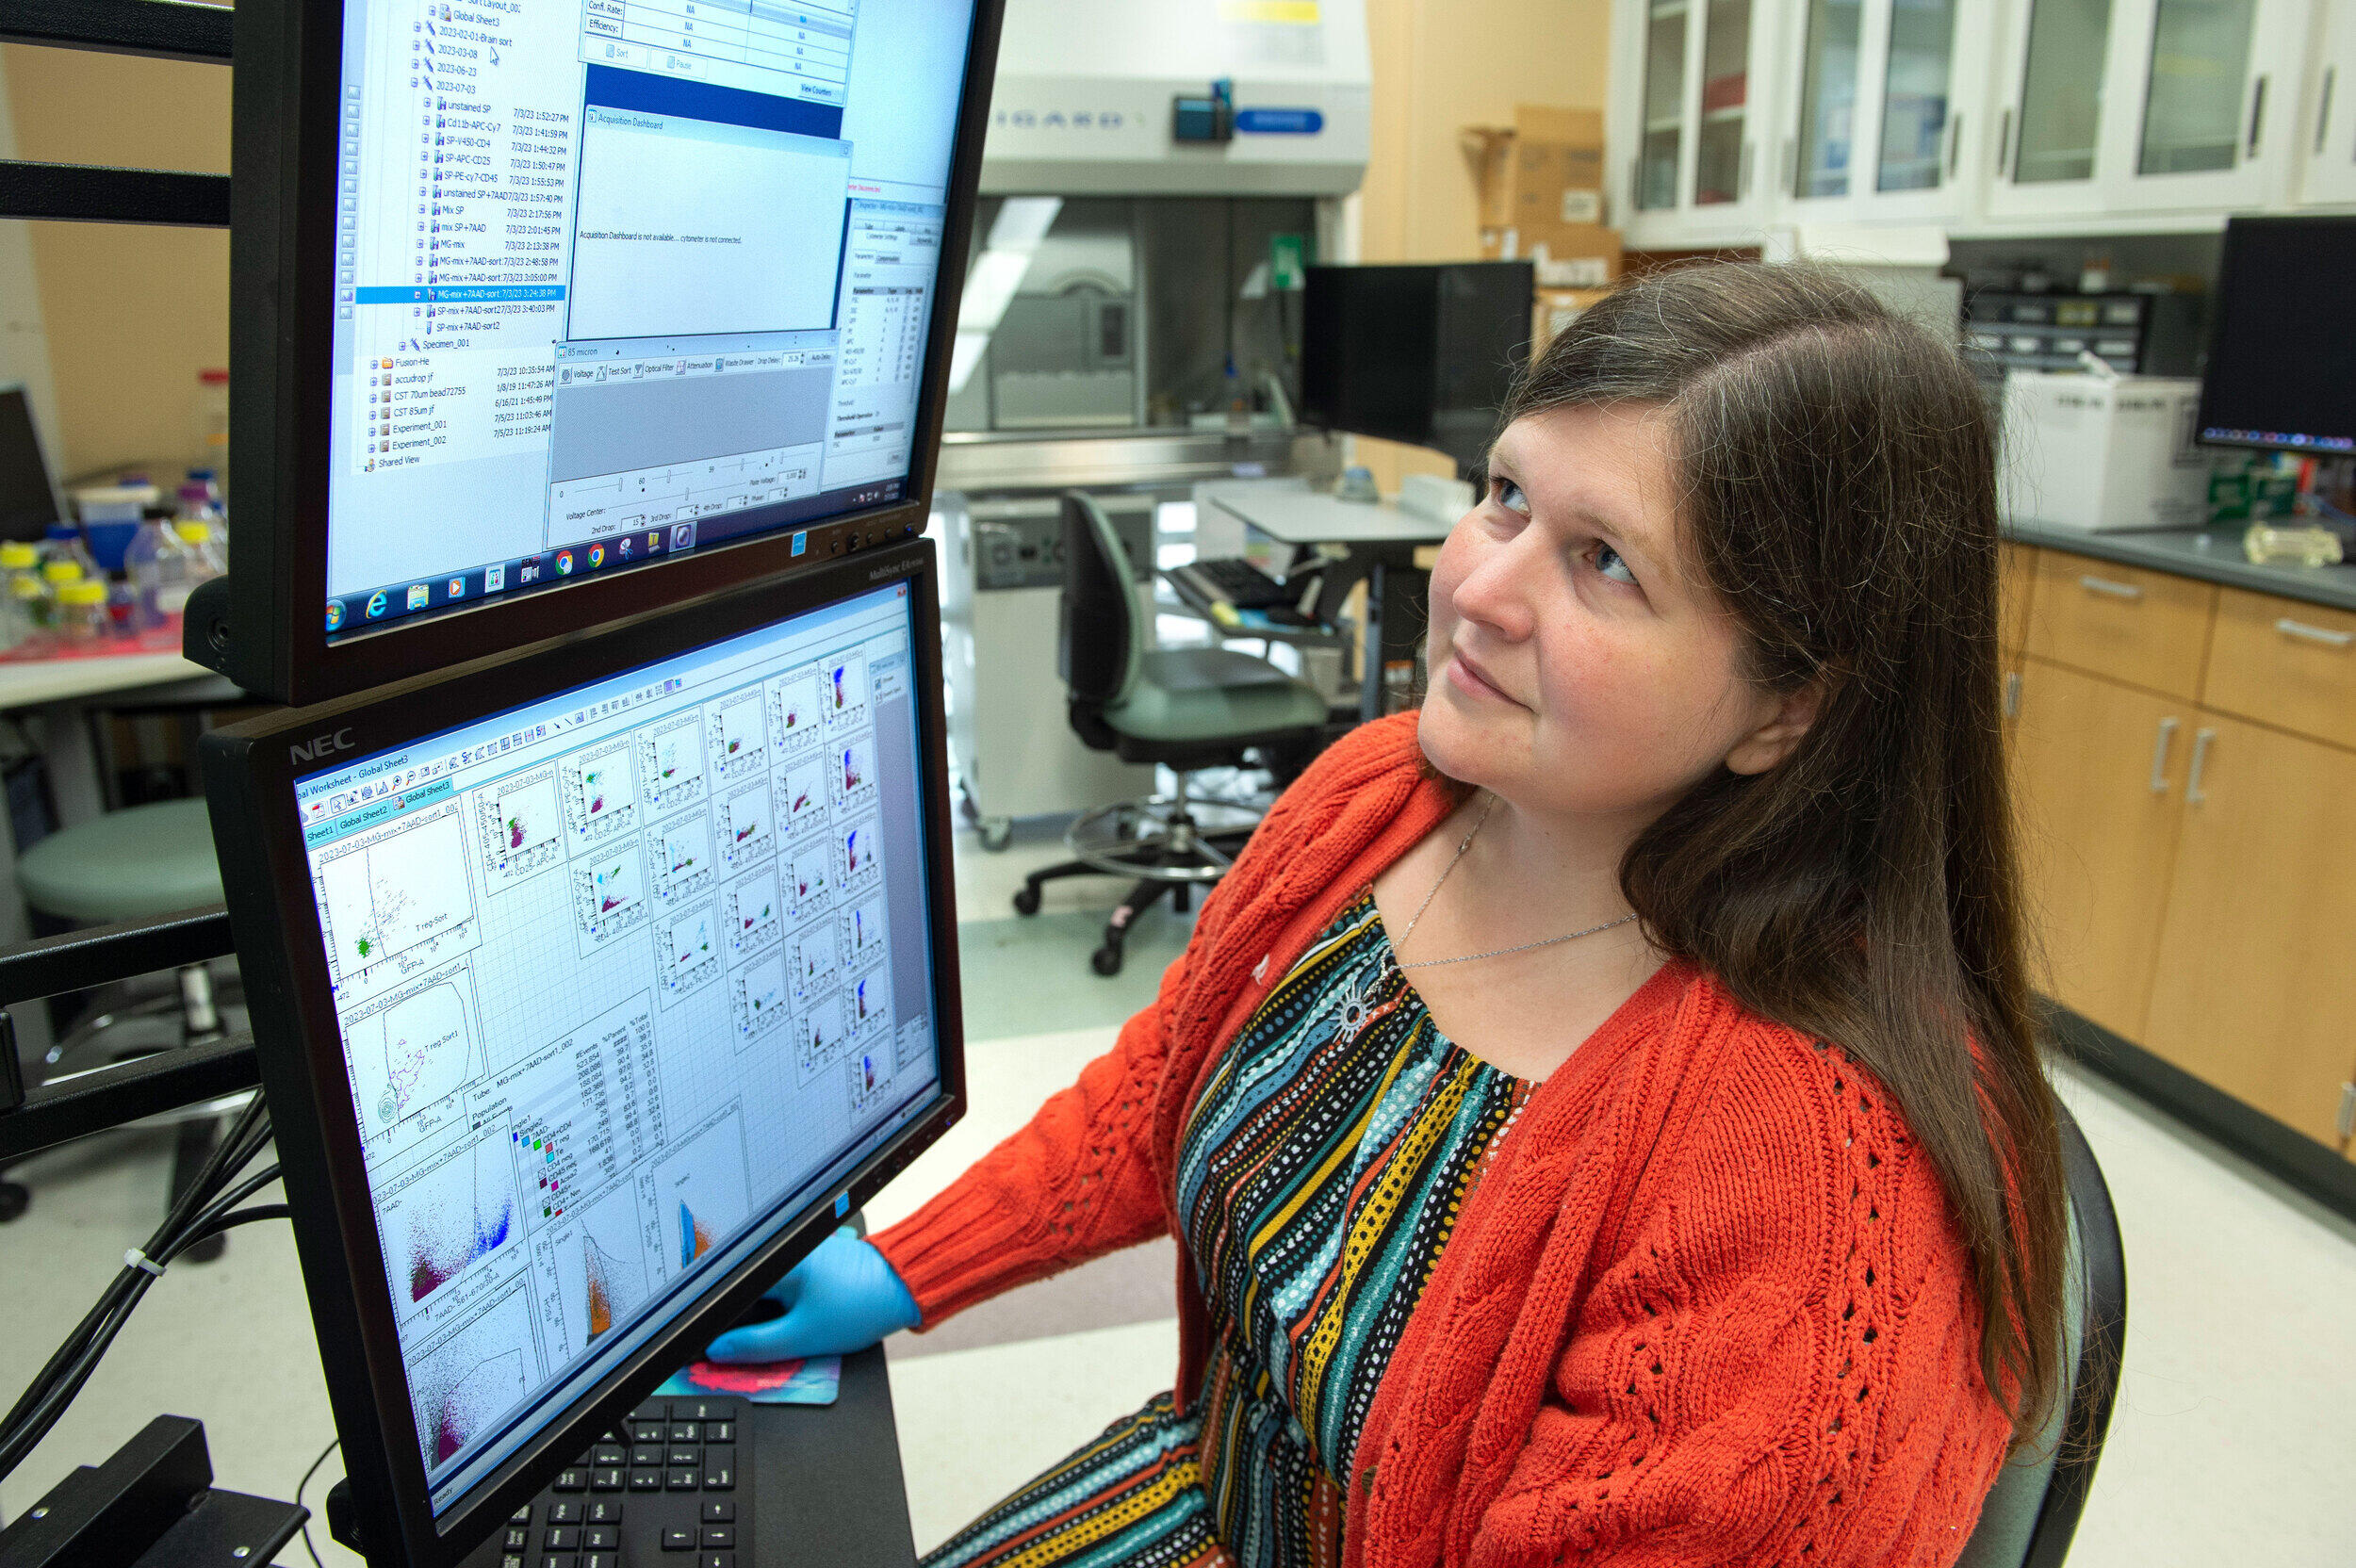 Rebecca Martin, Ph.D., a professor in the School of Medicine, observes a computer monitor in a VCU lab.